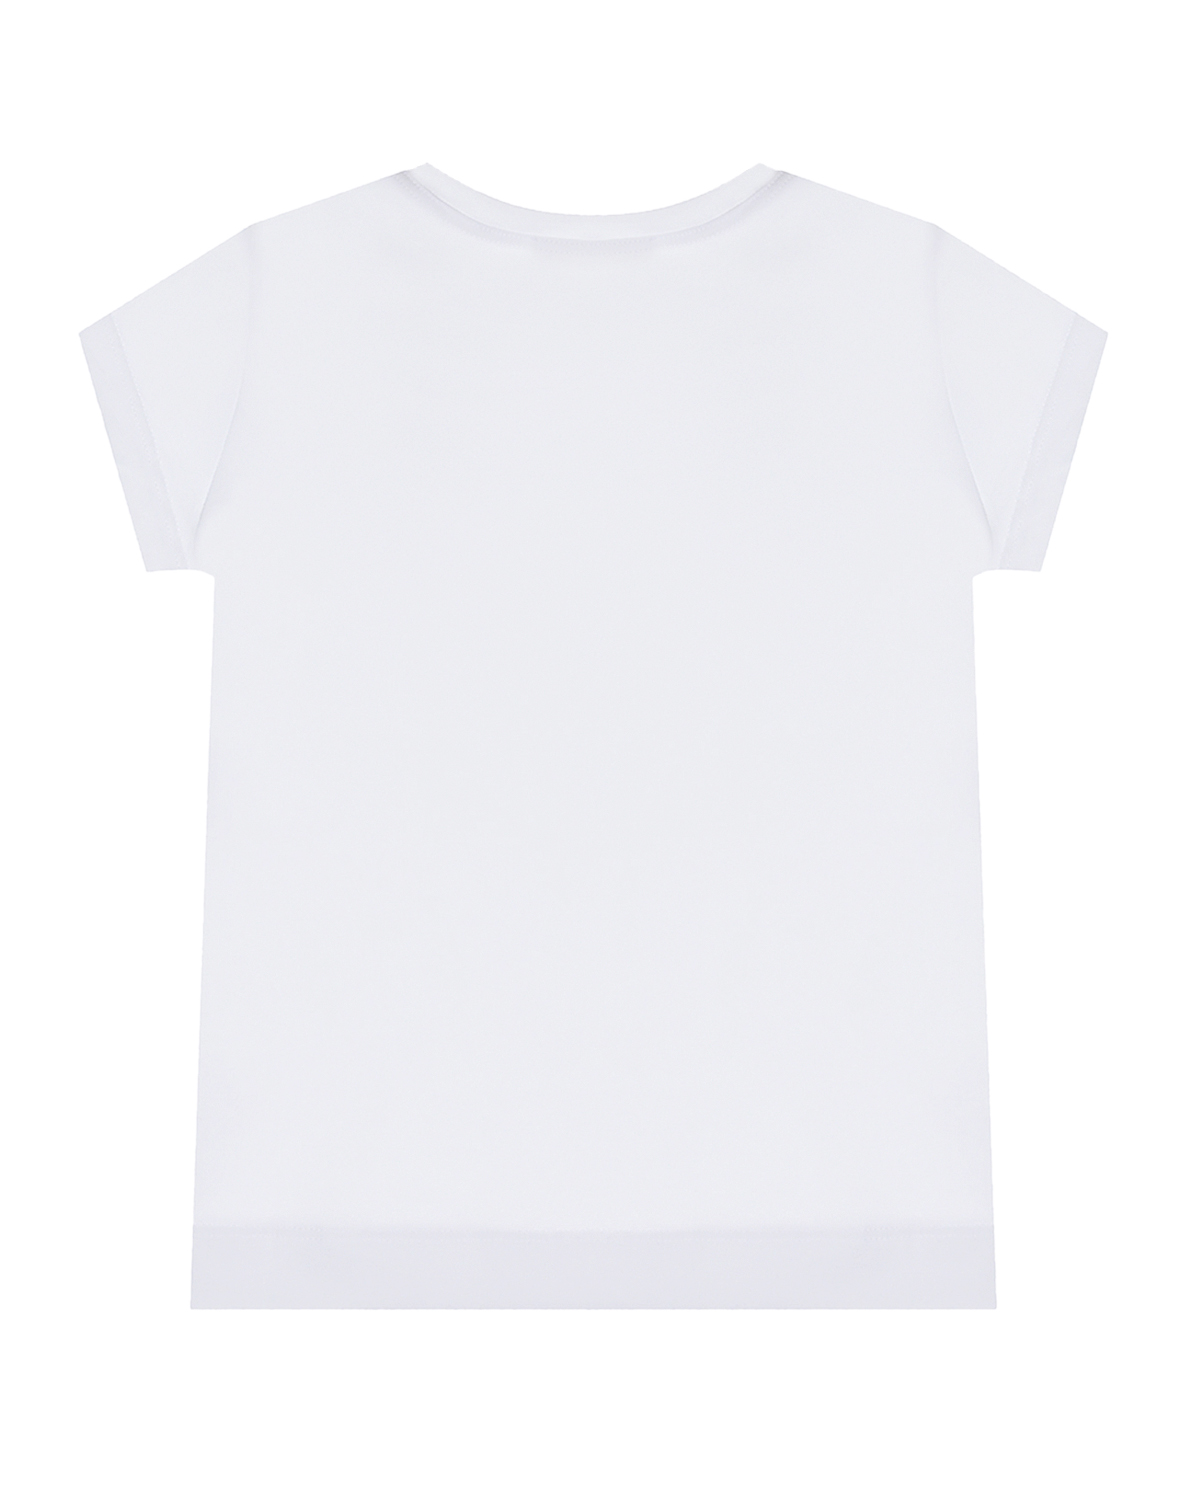 Белая футболка с принтом "SUPER GIRL" Monnalisa детская, размер 104, цвет белый - фото 2